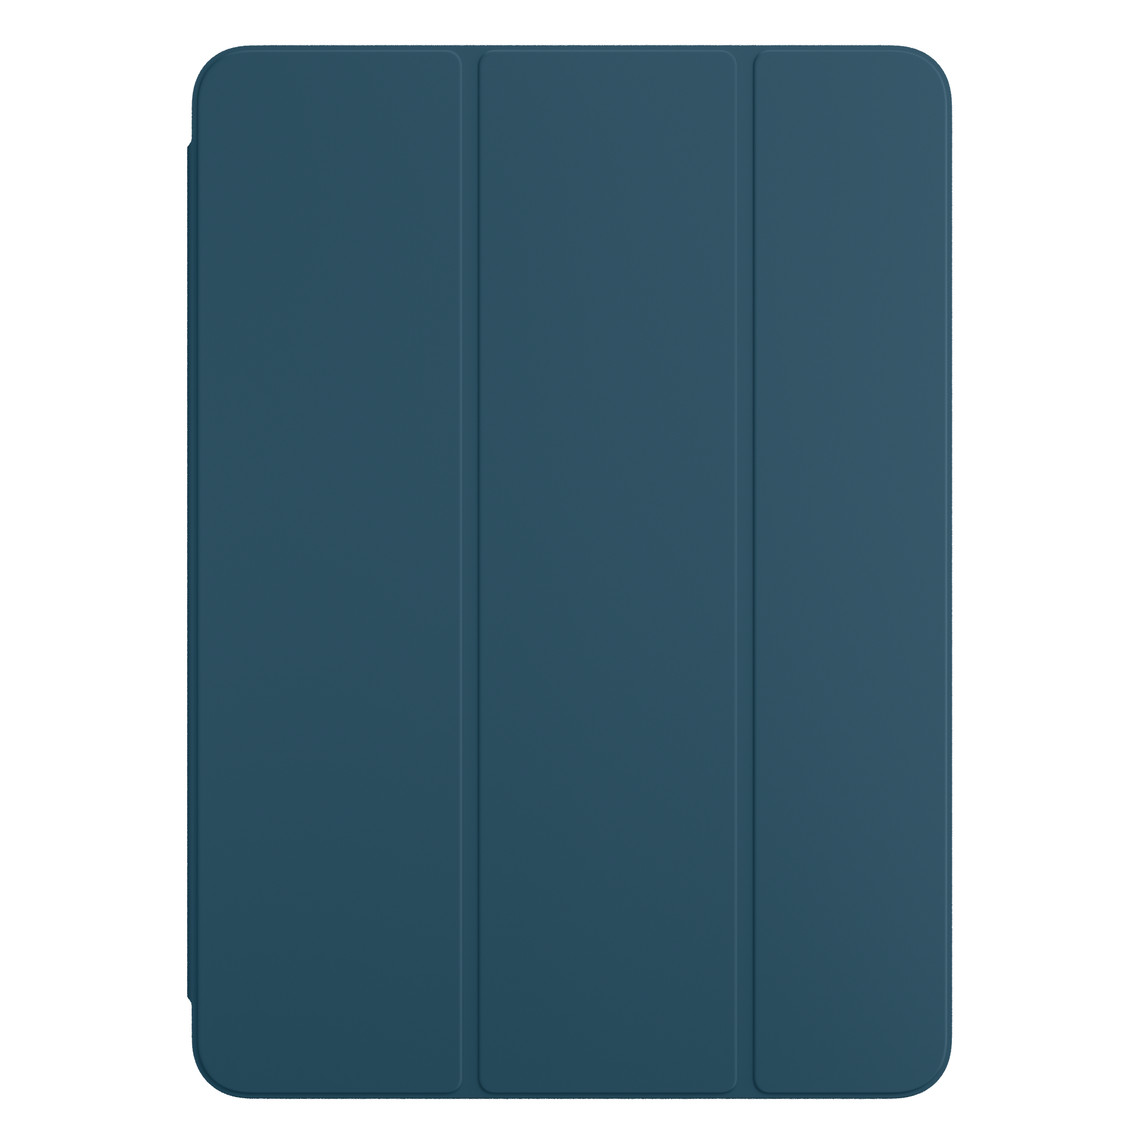 Hình ảnh mặt trước của Smart Folio màu Xanh Hải Quân cho iPad Pro.